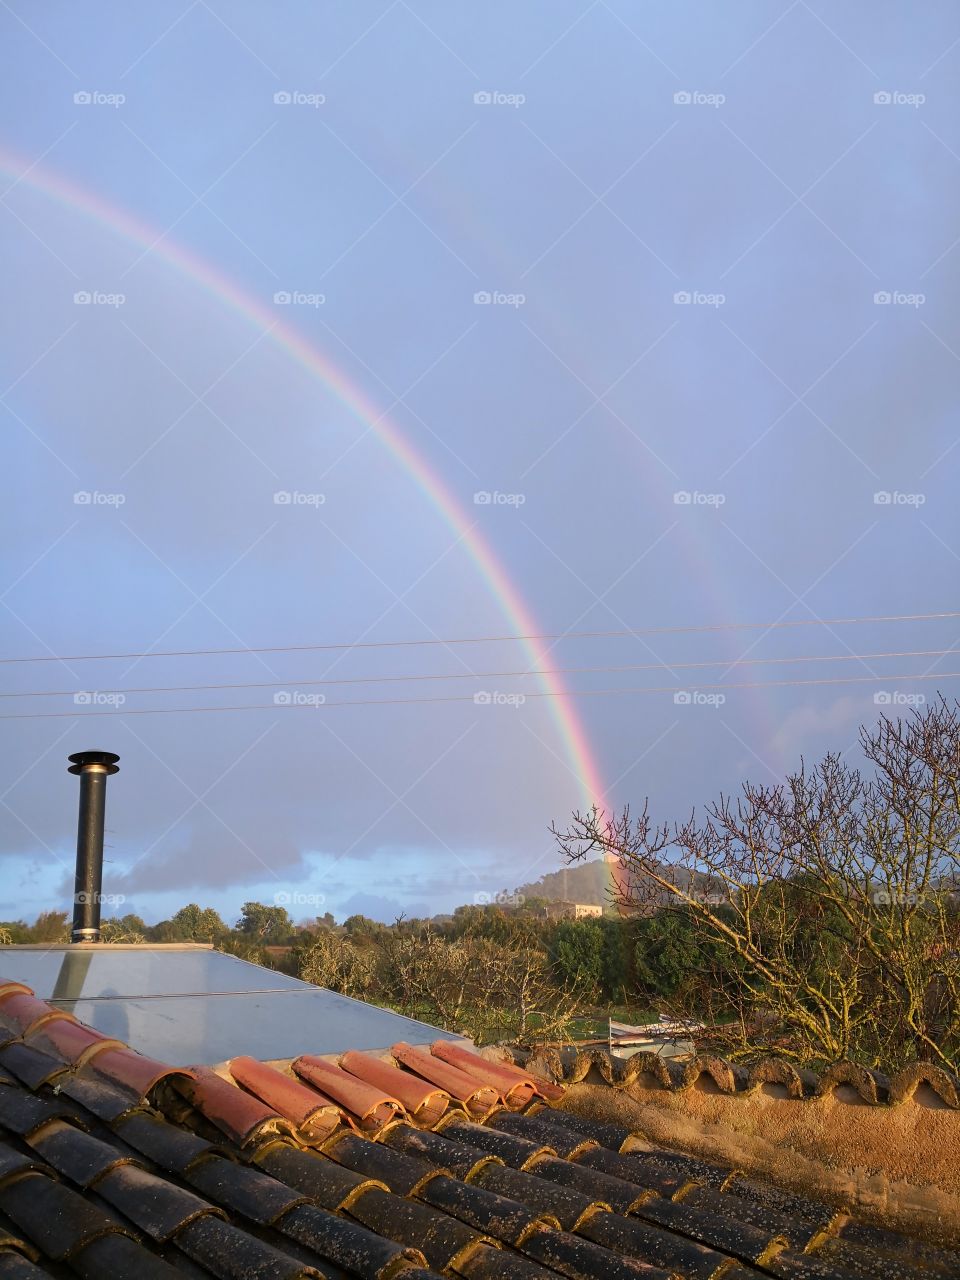 A rare double rainbow